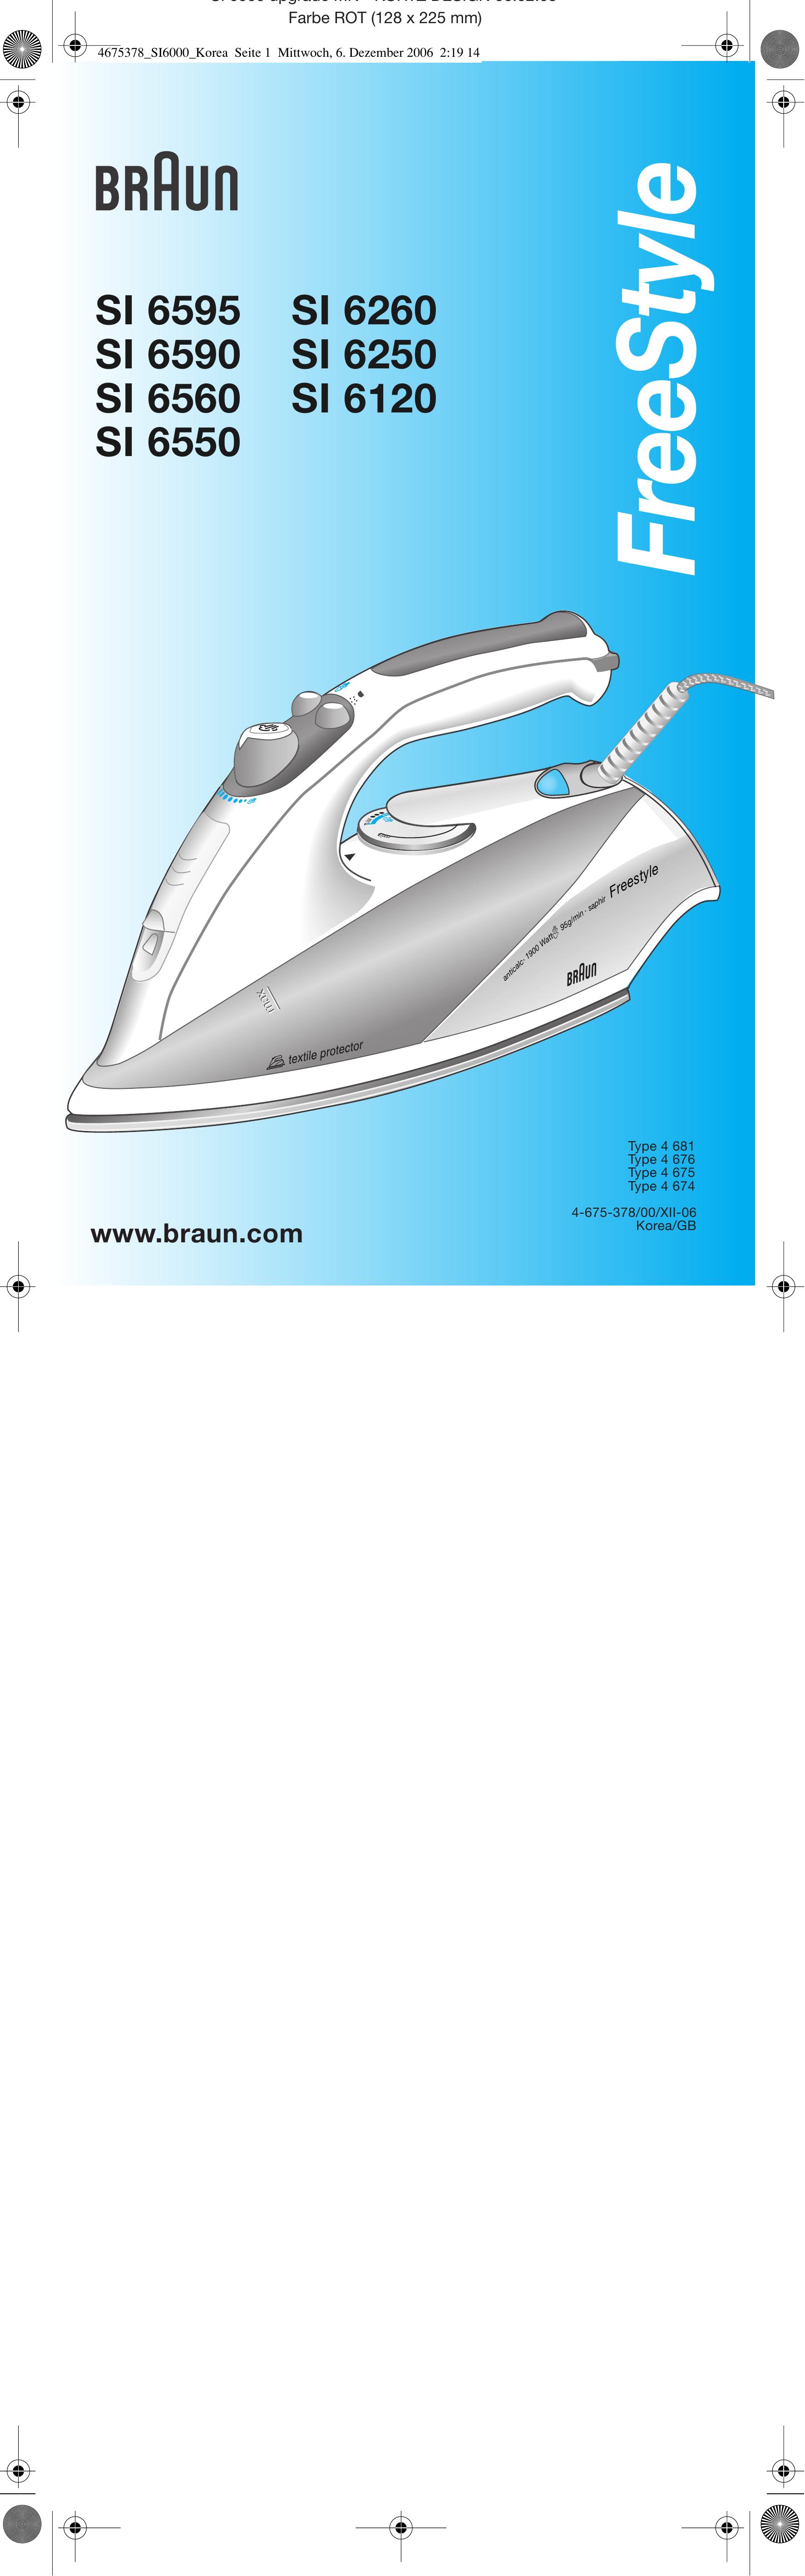 Braun SI 6250 Iron User Manual